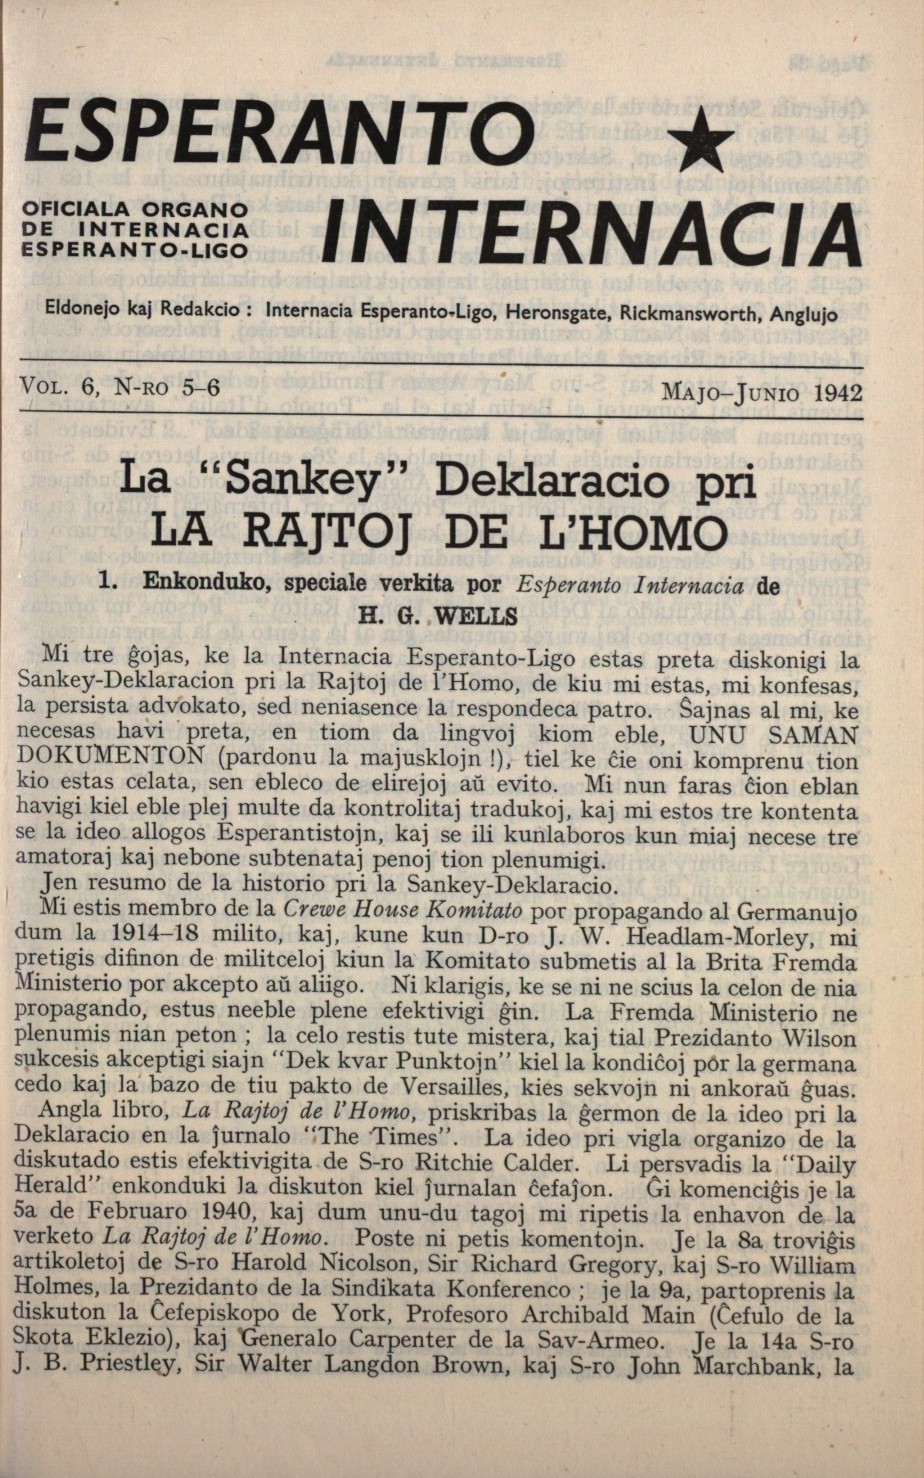 La Sankey Deklaracio por La Rajtoj de l'Homo'